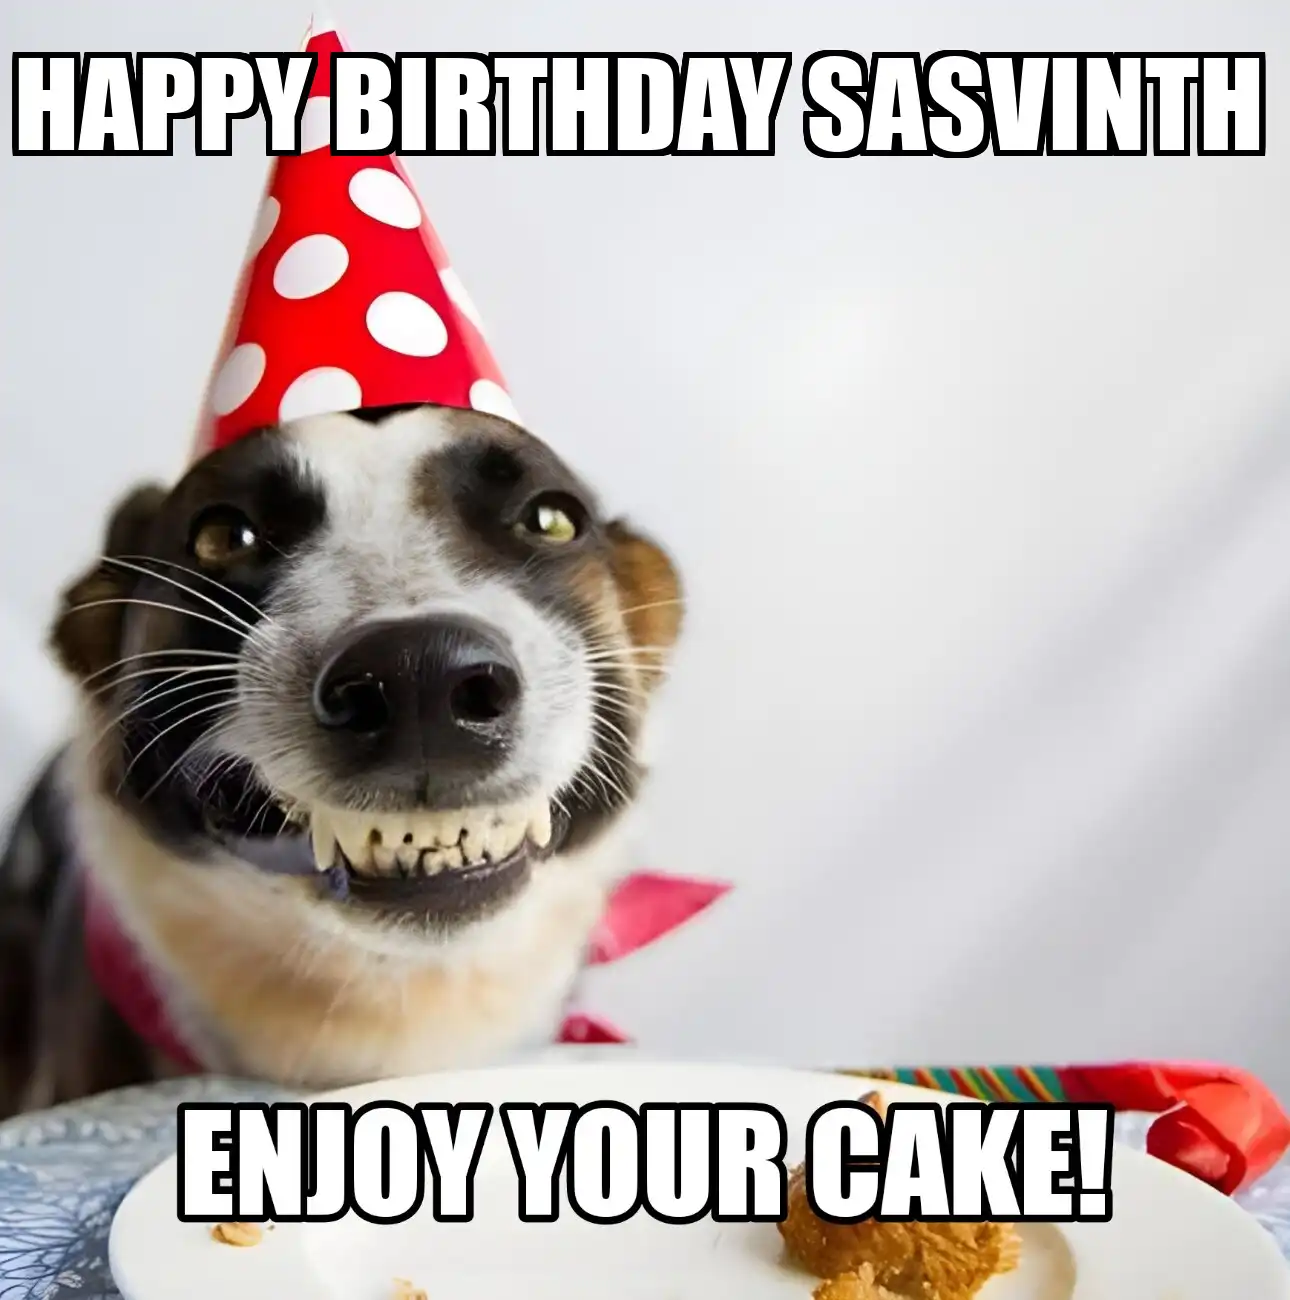 Happy Birthday Sasvinth Enjoy Your Cake Dog Meme